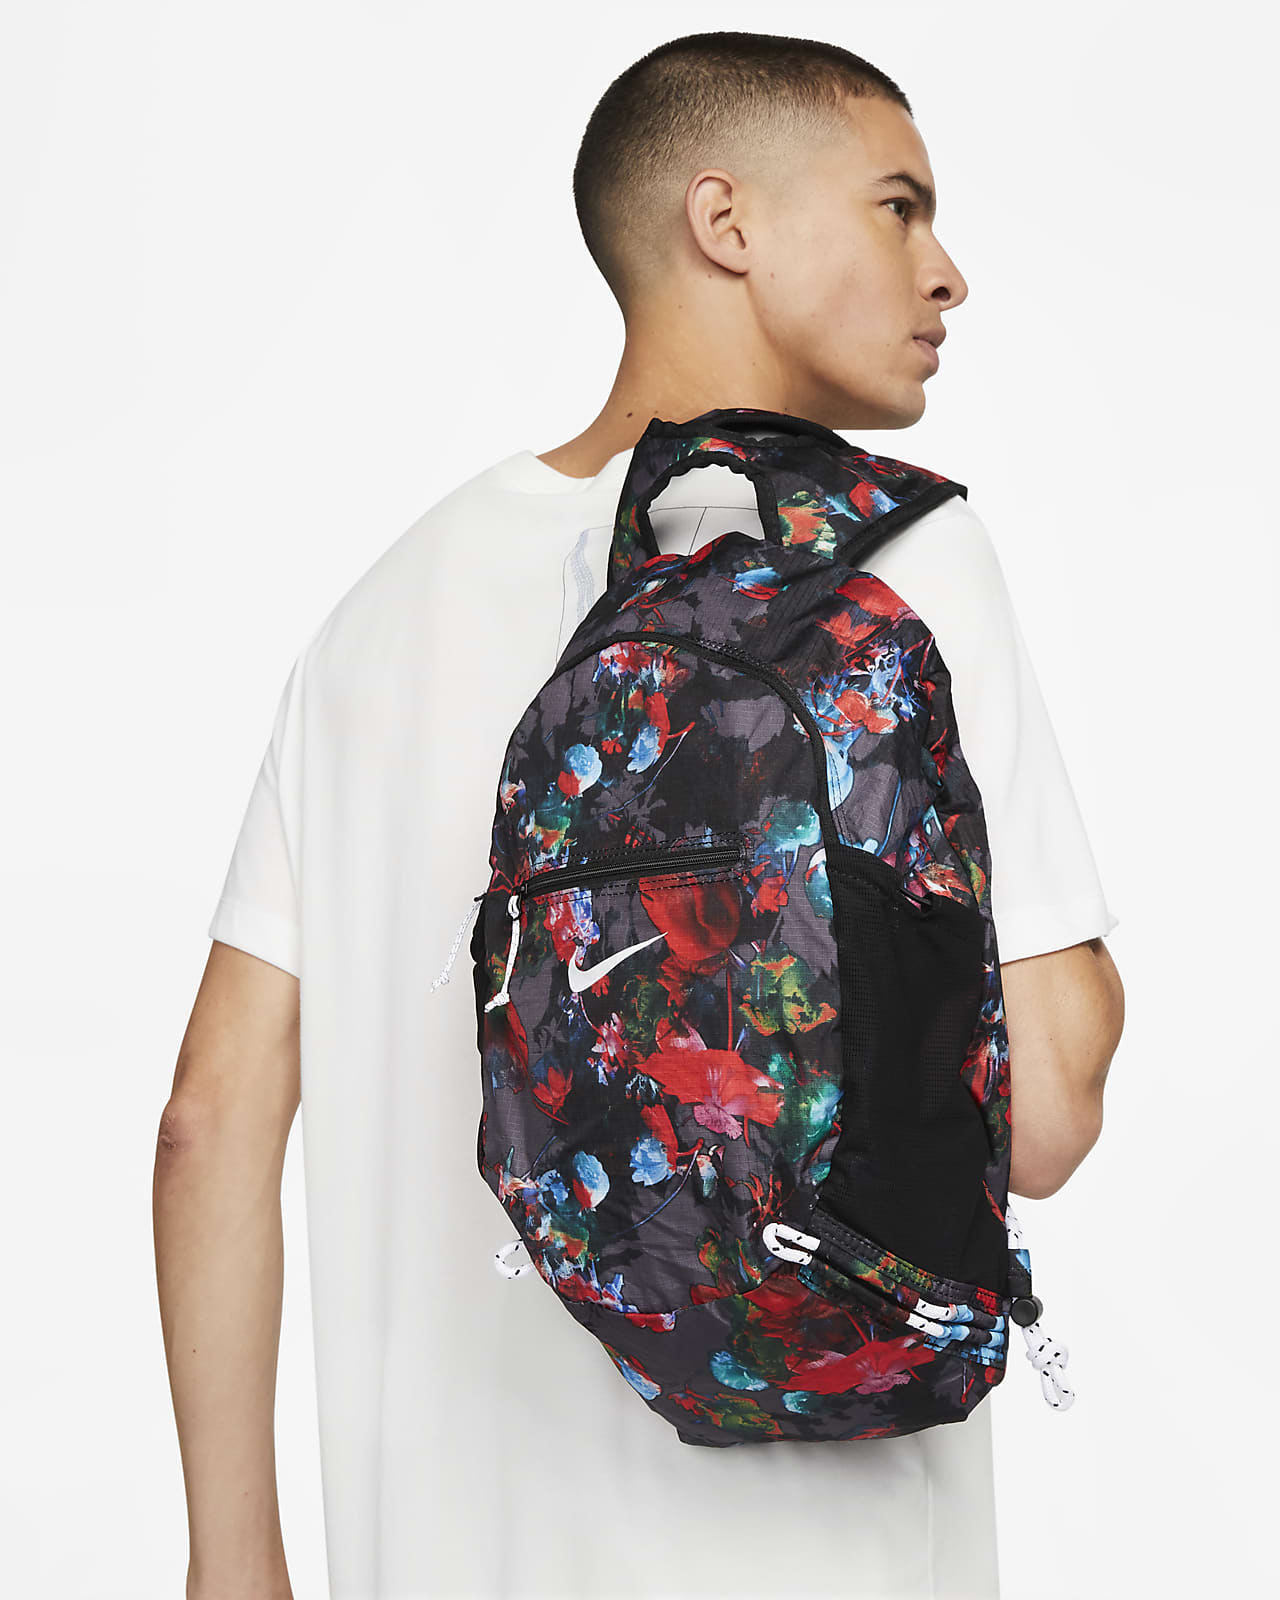 Nike Printed Stash Backpack (17L)